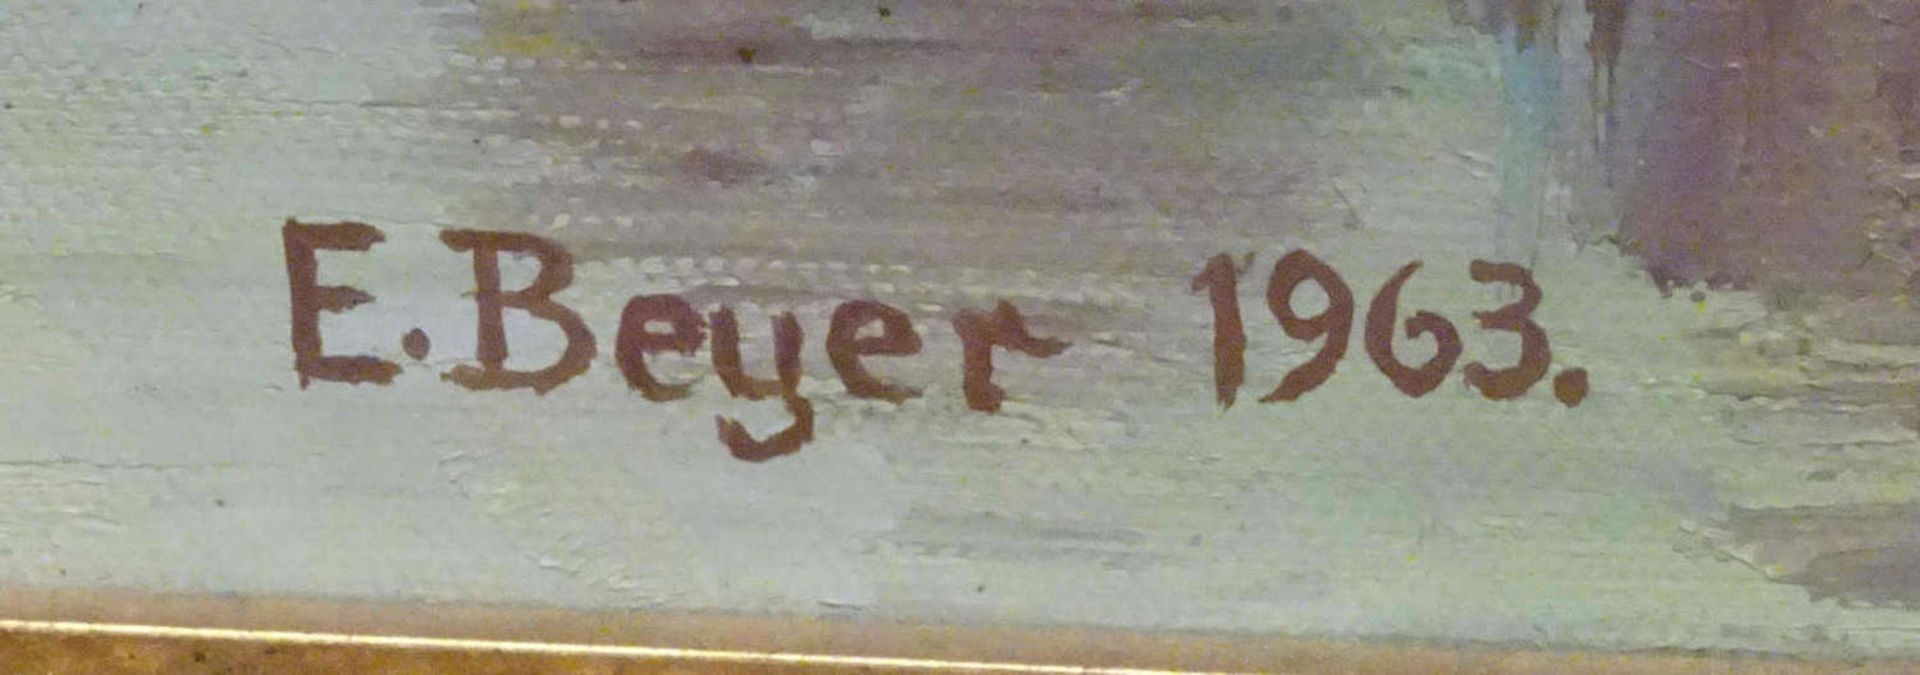 E.Beyer, Ölgmälde auf Leinwand, "Pferde auf Koppel", signiert E.Beyer1963. Gerahmt. Maße inkl. - Bild 3 aus 3